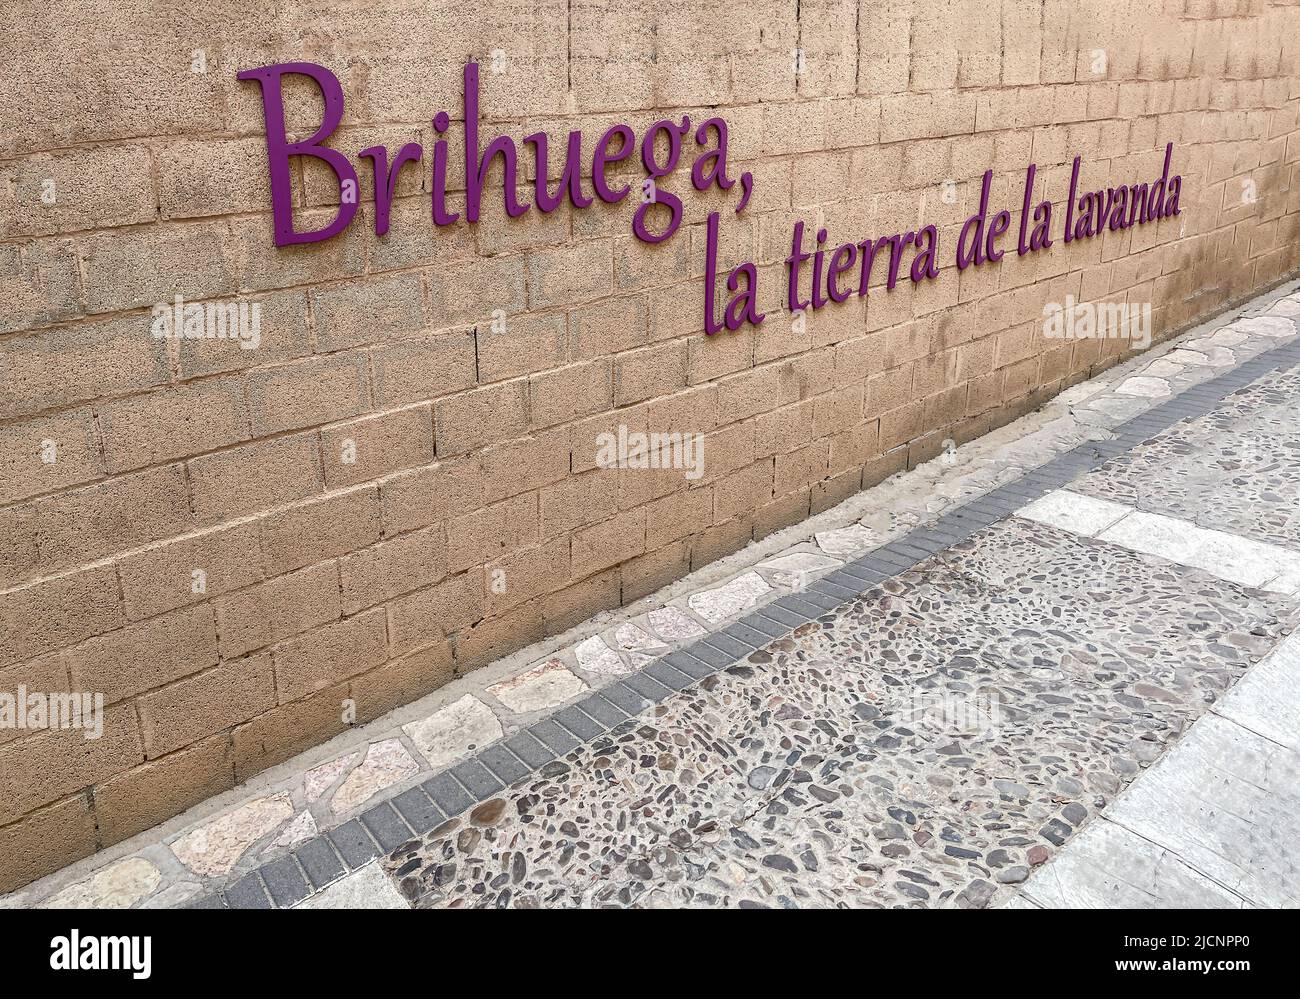 Un muro di mattoni chiaro con lo slogan spagnolo Brihuega la terra di lavanda, festa o fiera di lavanda, su una strada lastricata medievale a Brihuega, Spagna Foto Stock